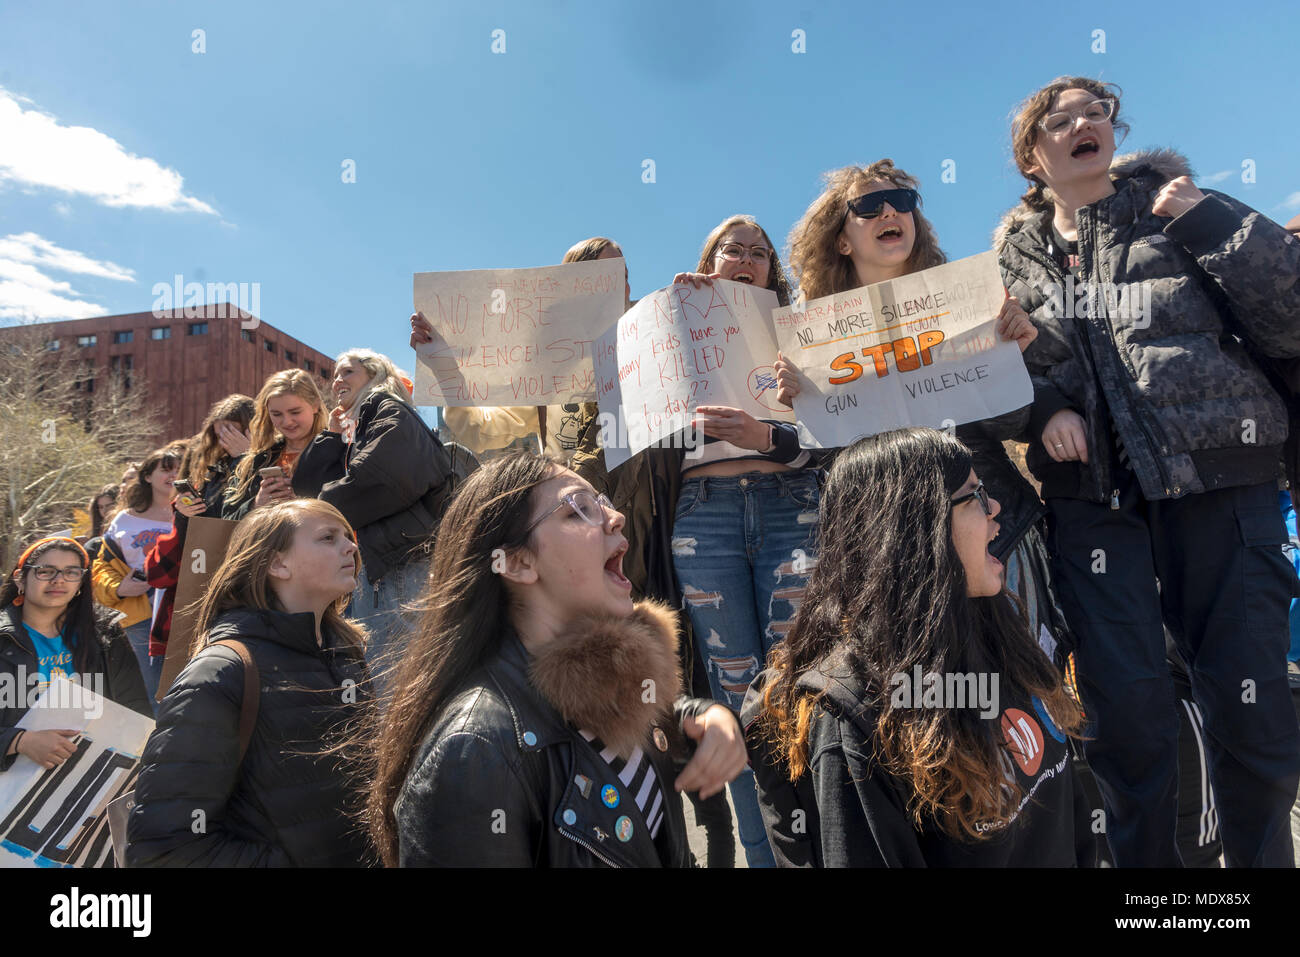 New York, NY - 20 avril 2018 - NATIONAL STUDENT WALK-OUT Les élèves sortis de la classe pour marquer le 19e anniversaire de la tuerie de Columbine. Plusieurs milliers se sont rassemblés à Washington Square Park appelant à des mesures de contrôle des armes à feu, y compris l'interdiction des armes d'assaut et d'un contrôle de fond. CREDIT : ©Stacy Walsh Rosenstock/Alamy Live News Banque D'Images